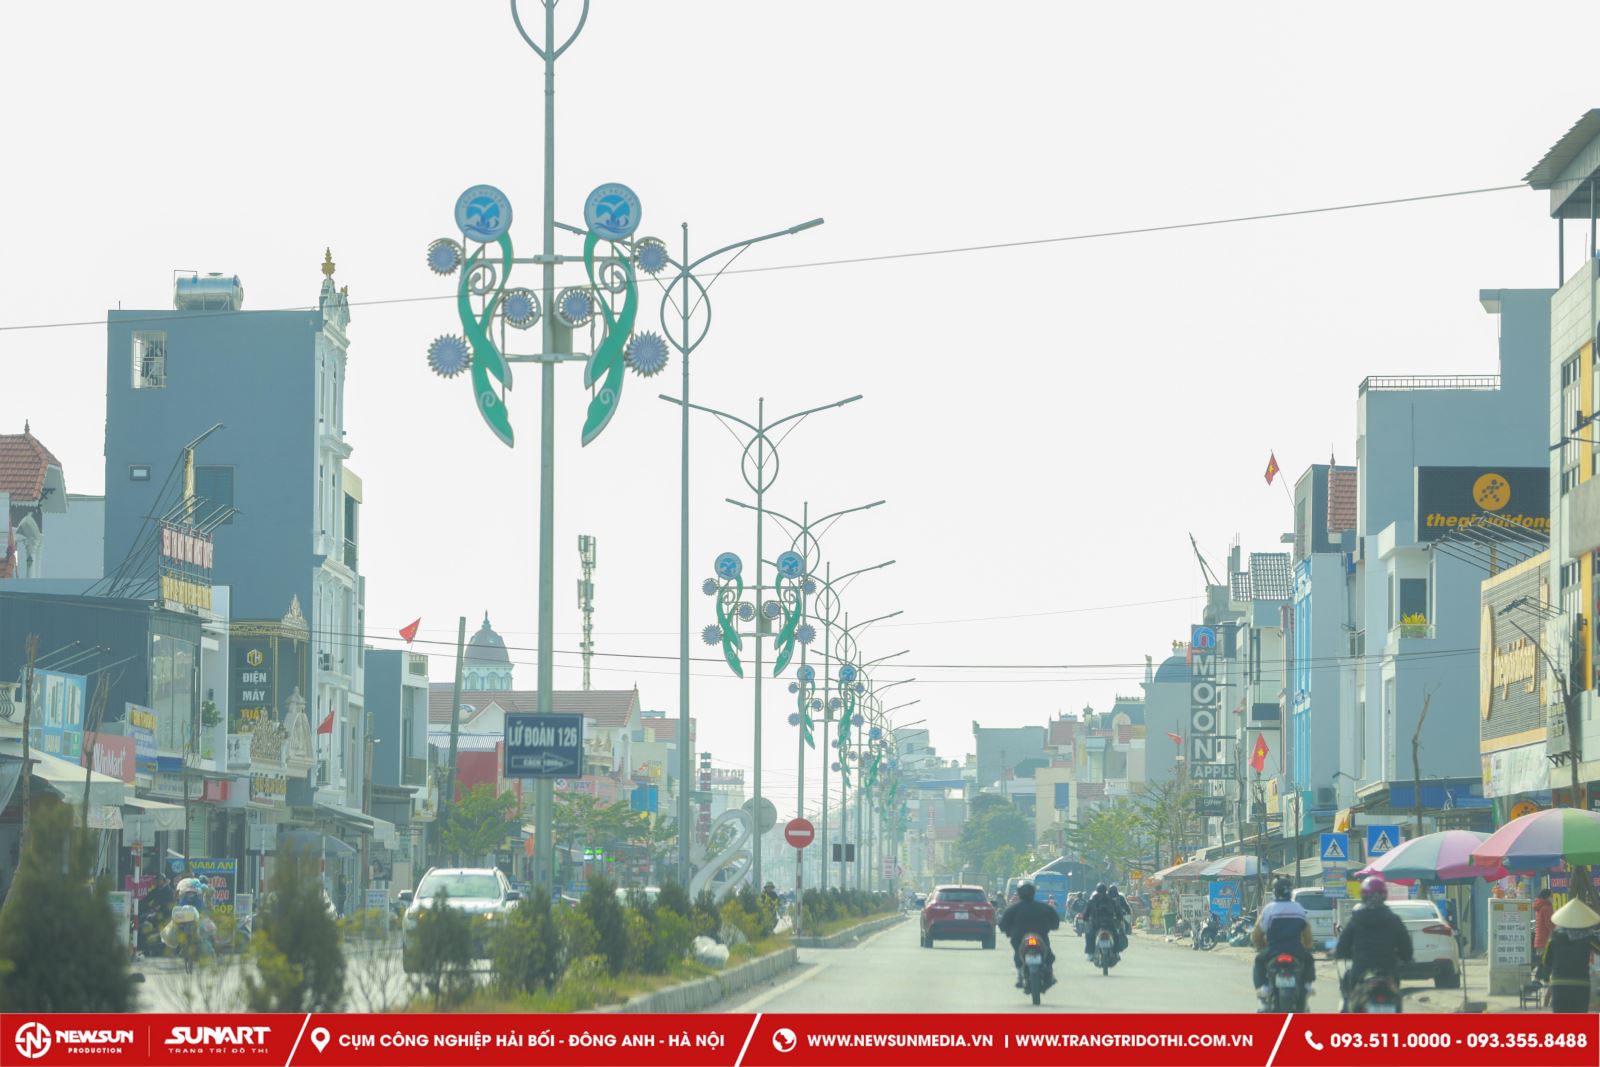 dự án trang trí đường phố tại huyện Thủy Nguyên, Hải Phòng được thiết kế và thi công bởi công ty trang trí đô thị Sunart 1